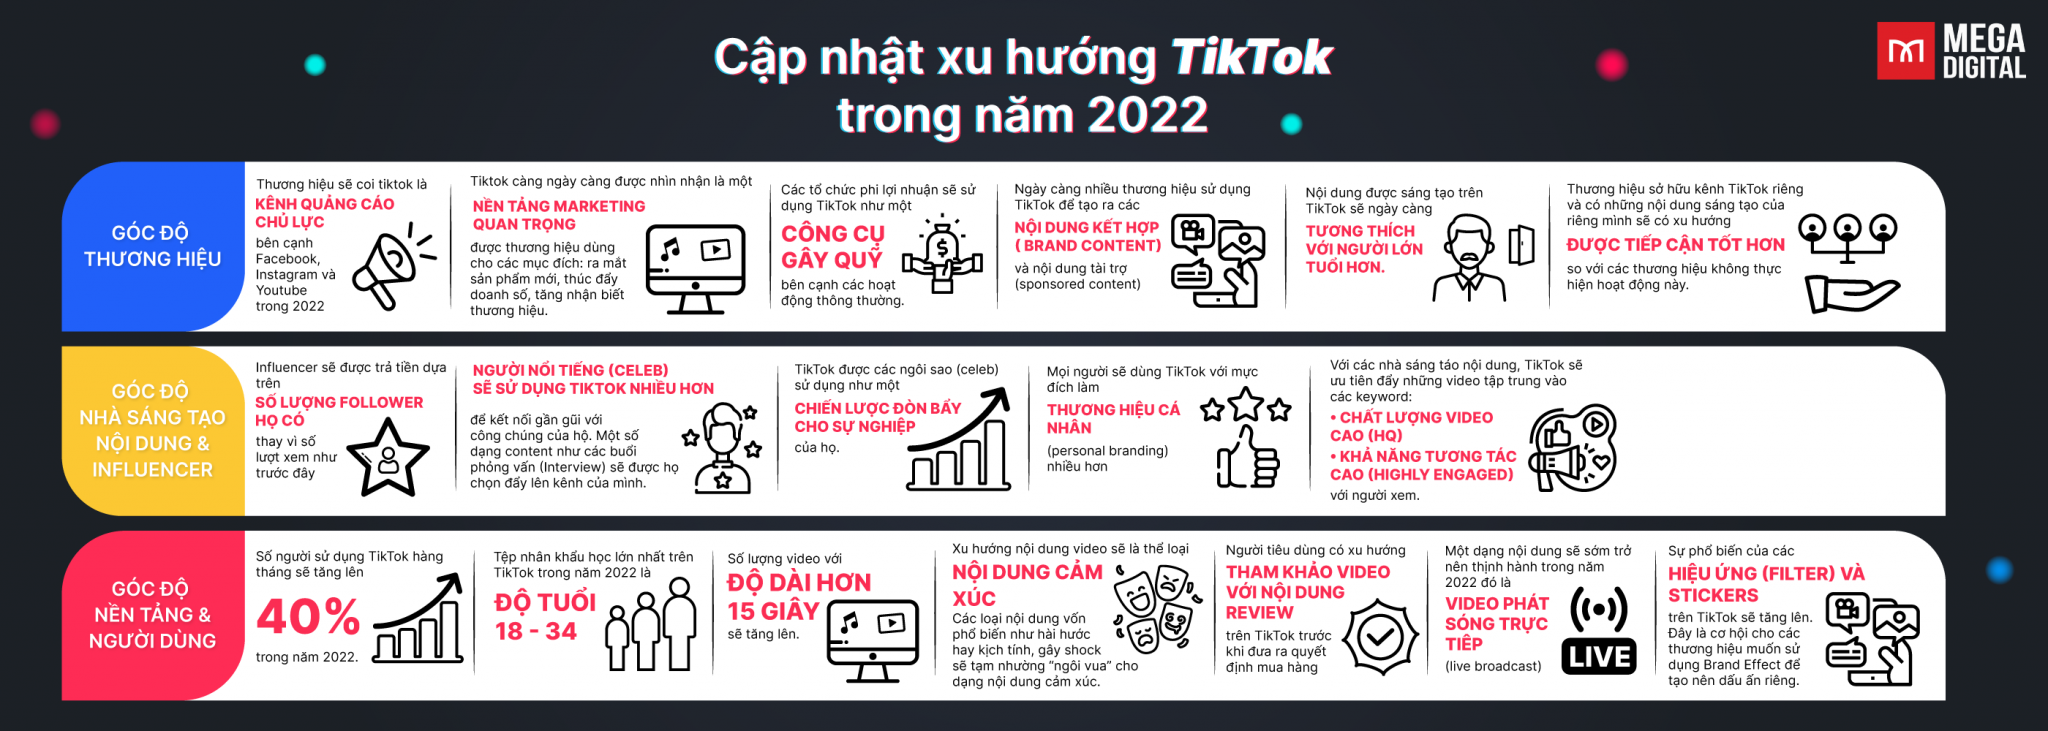 Trend of content on TikTok 2022 2048x731 1